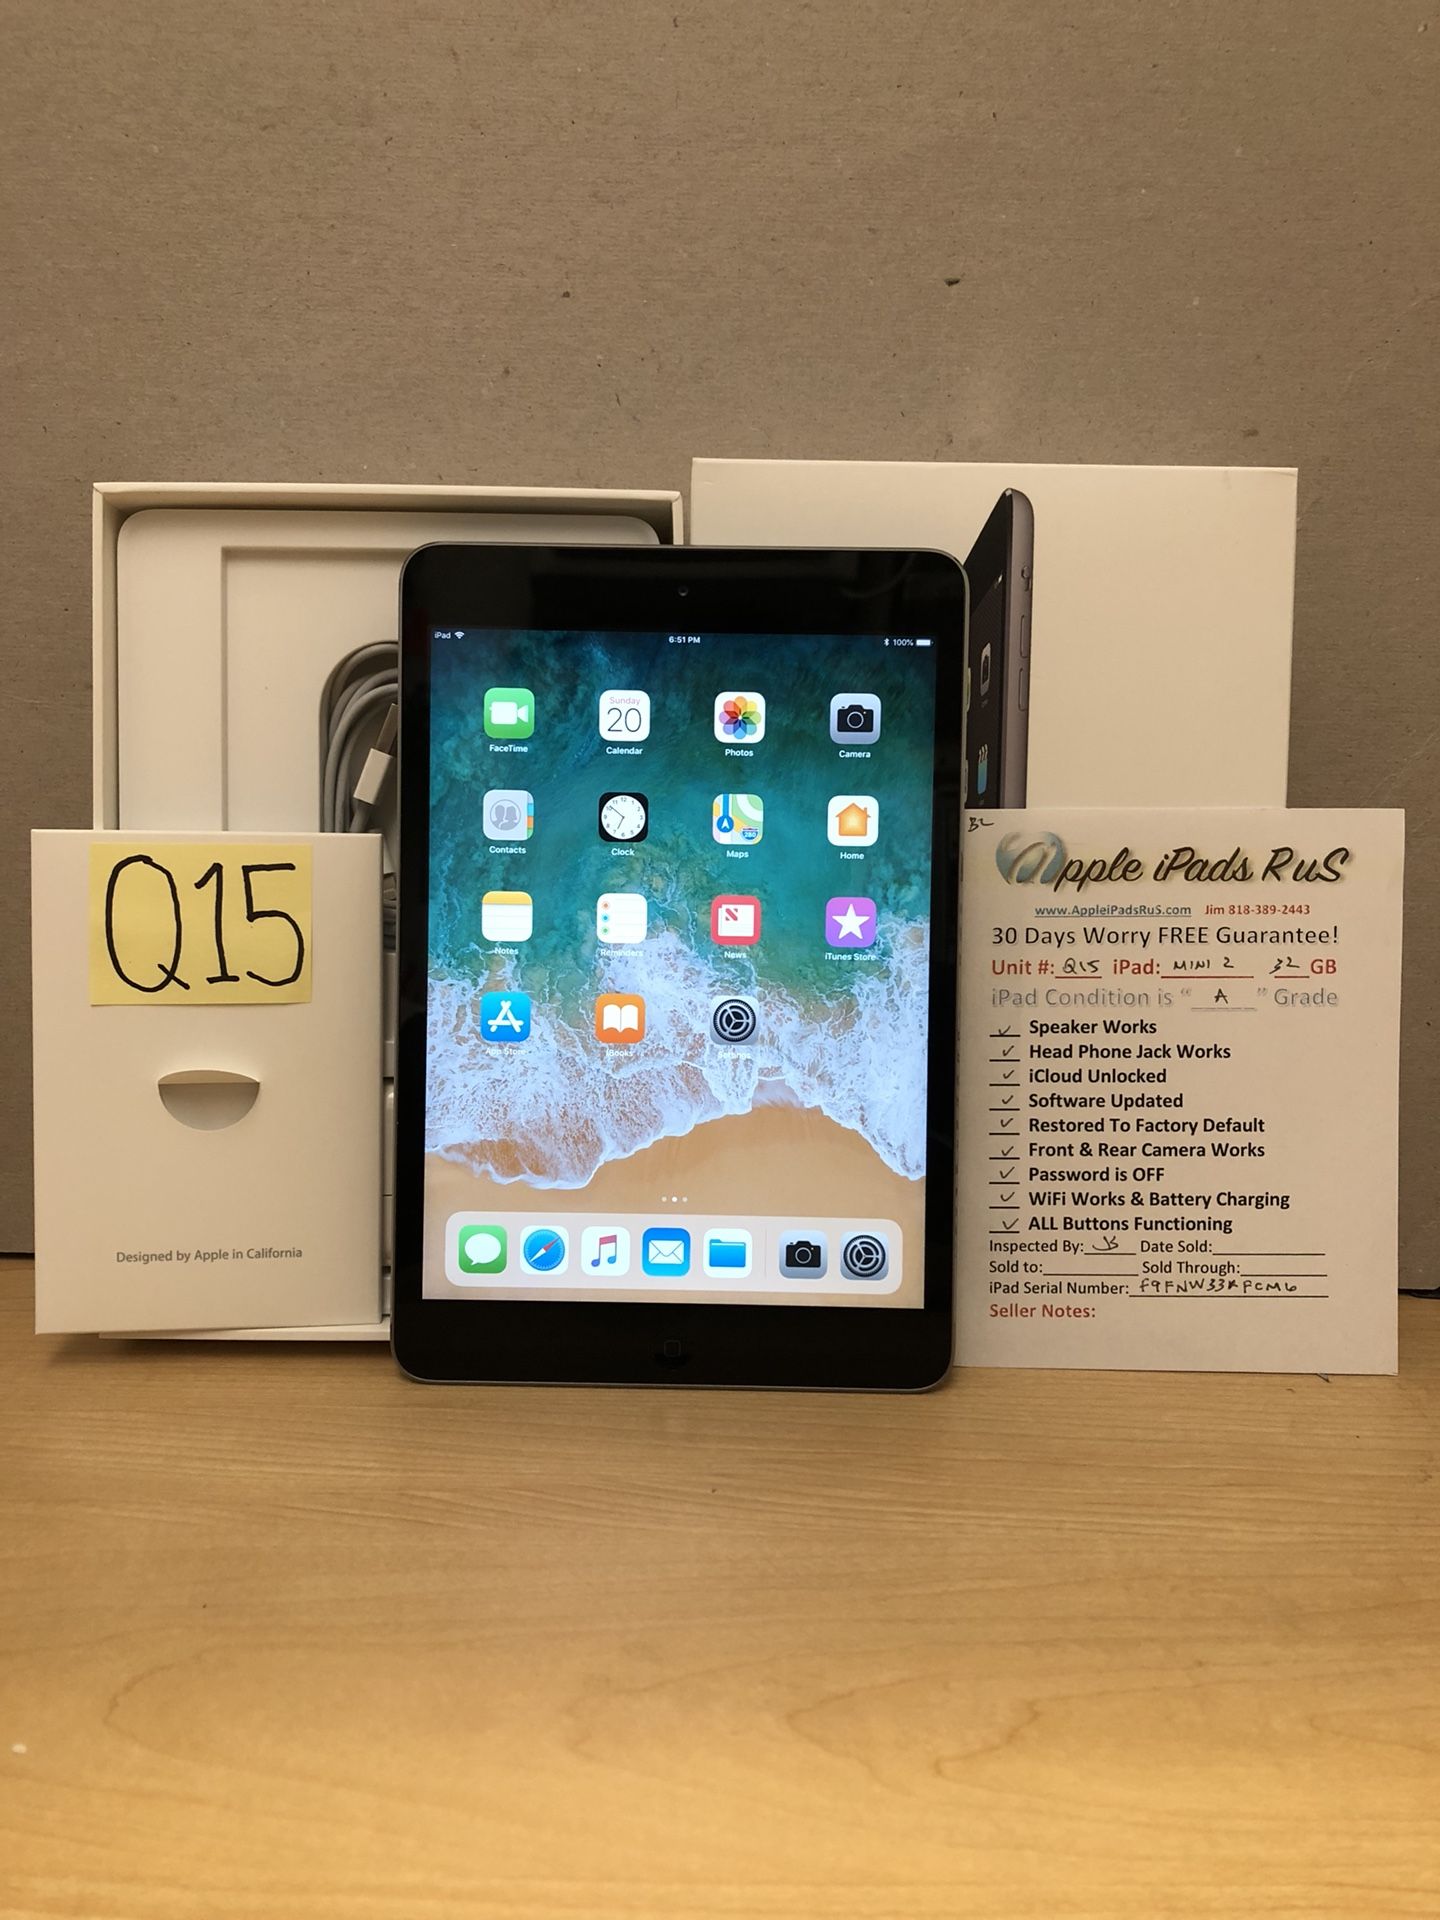 Q15 - iPad mini 2 32GB